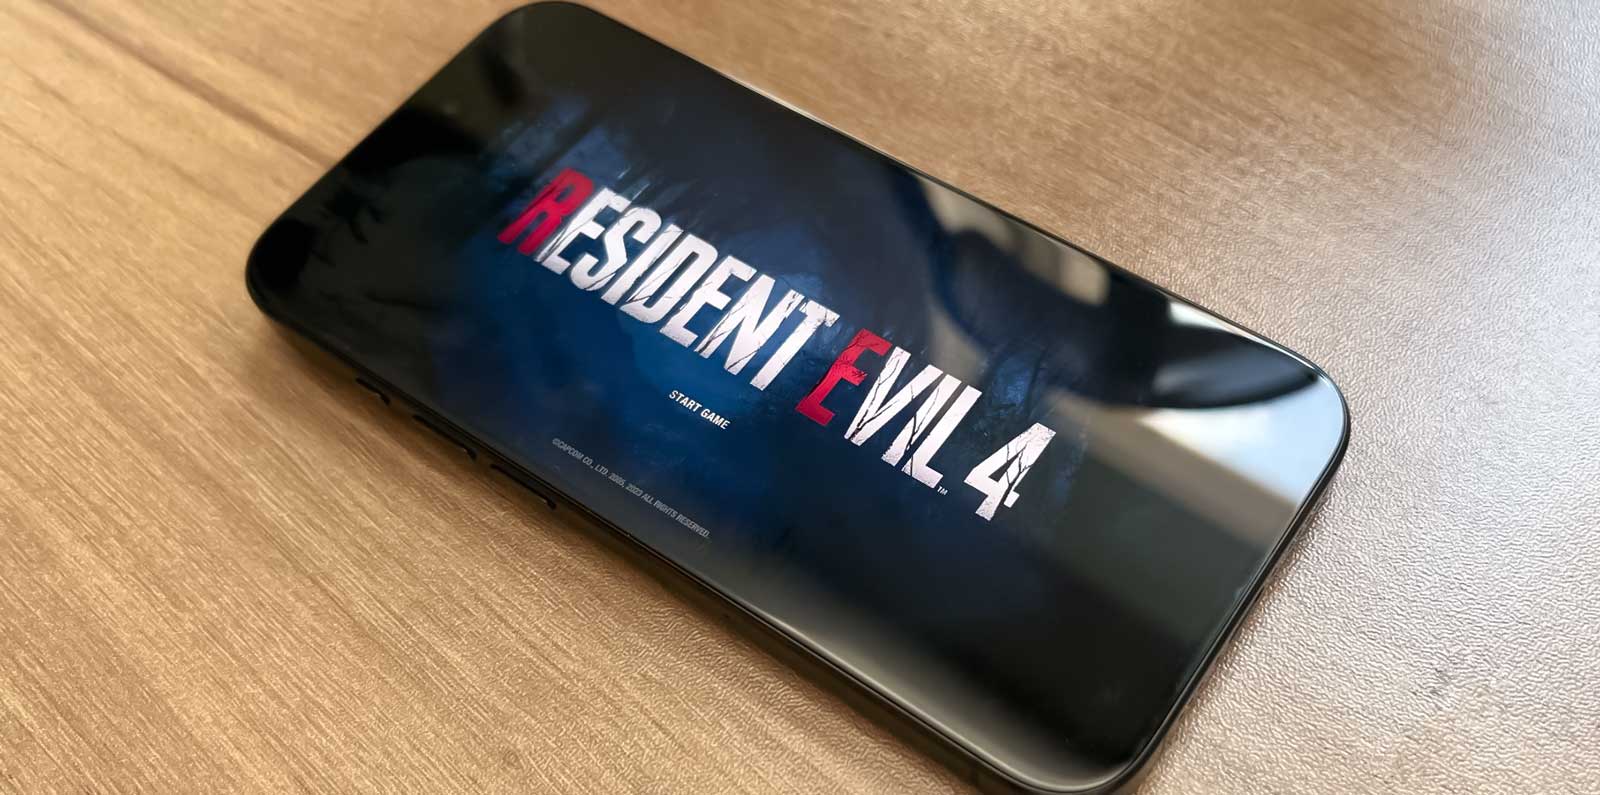 بازی Resident Evil 4 روی آیفون ۱۵ پرو